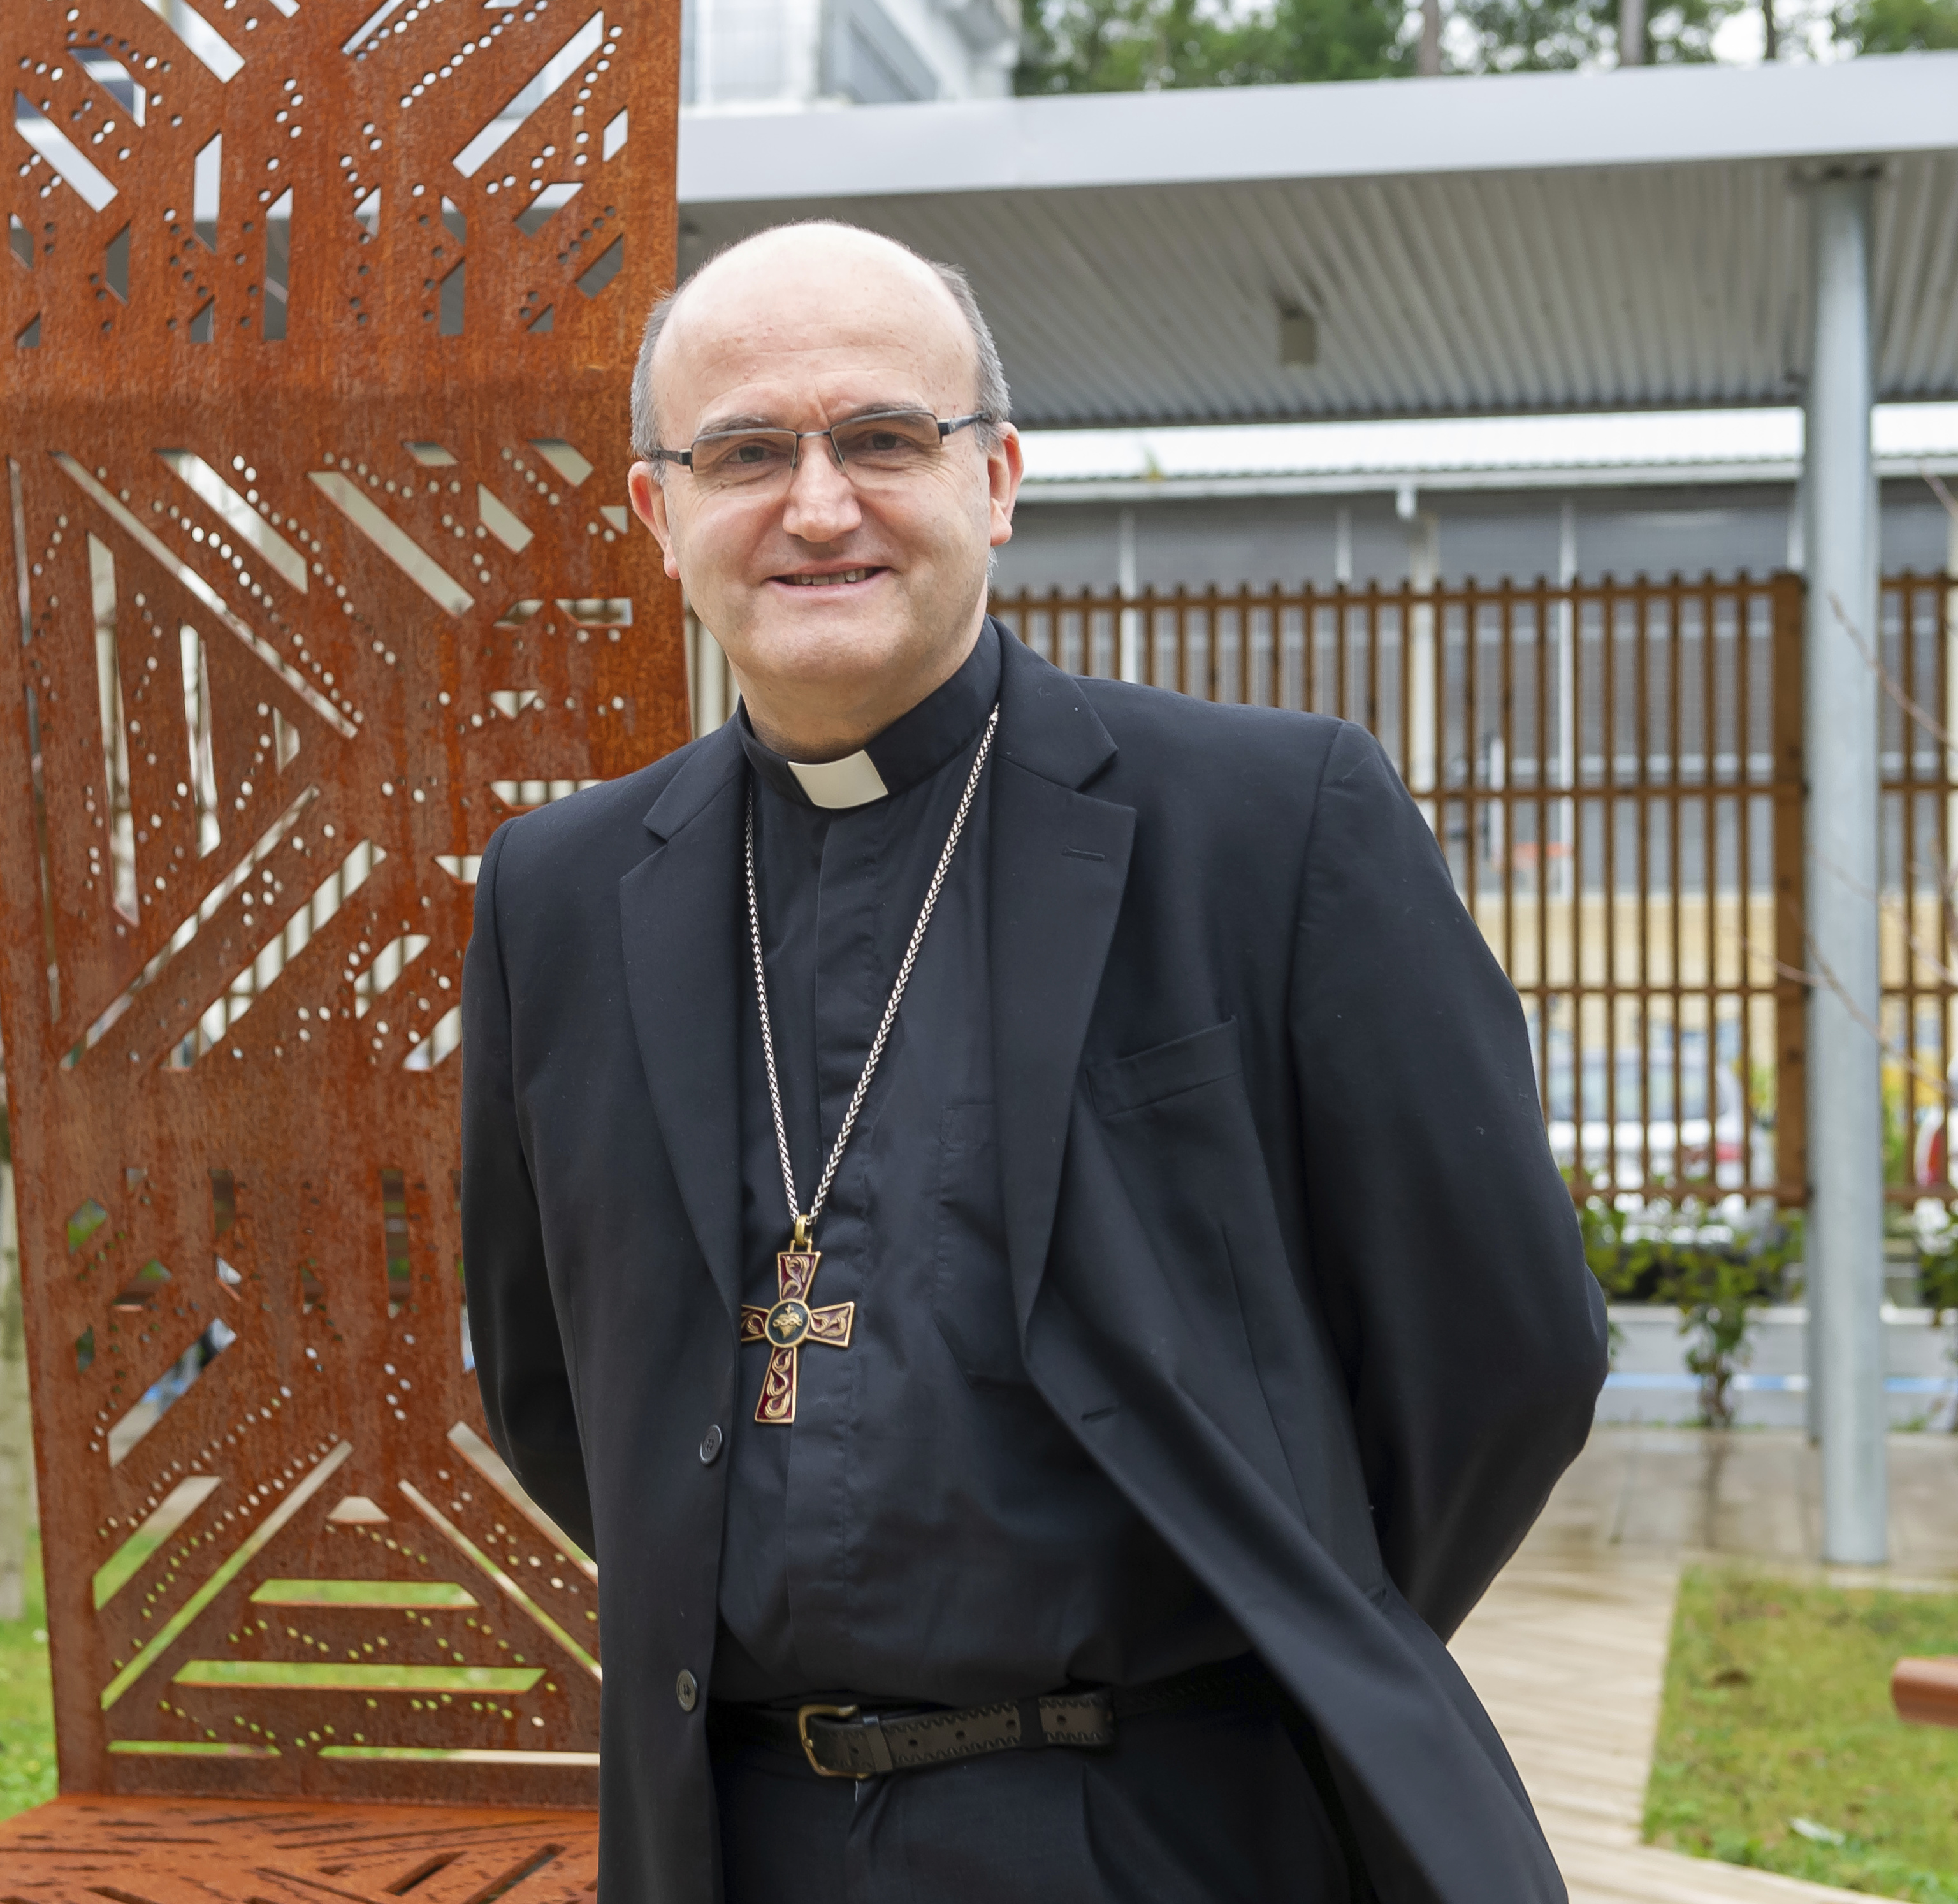 El obispo de San Sebastin Jos Mara Munilla sonriente antes de anunciar hoy su traslado a Alicante.